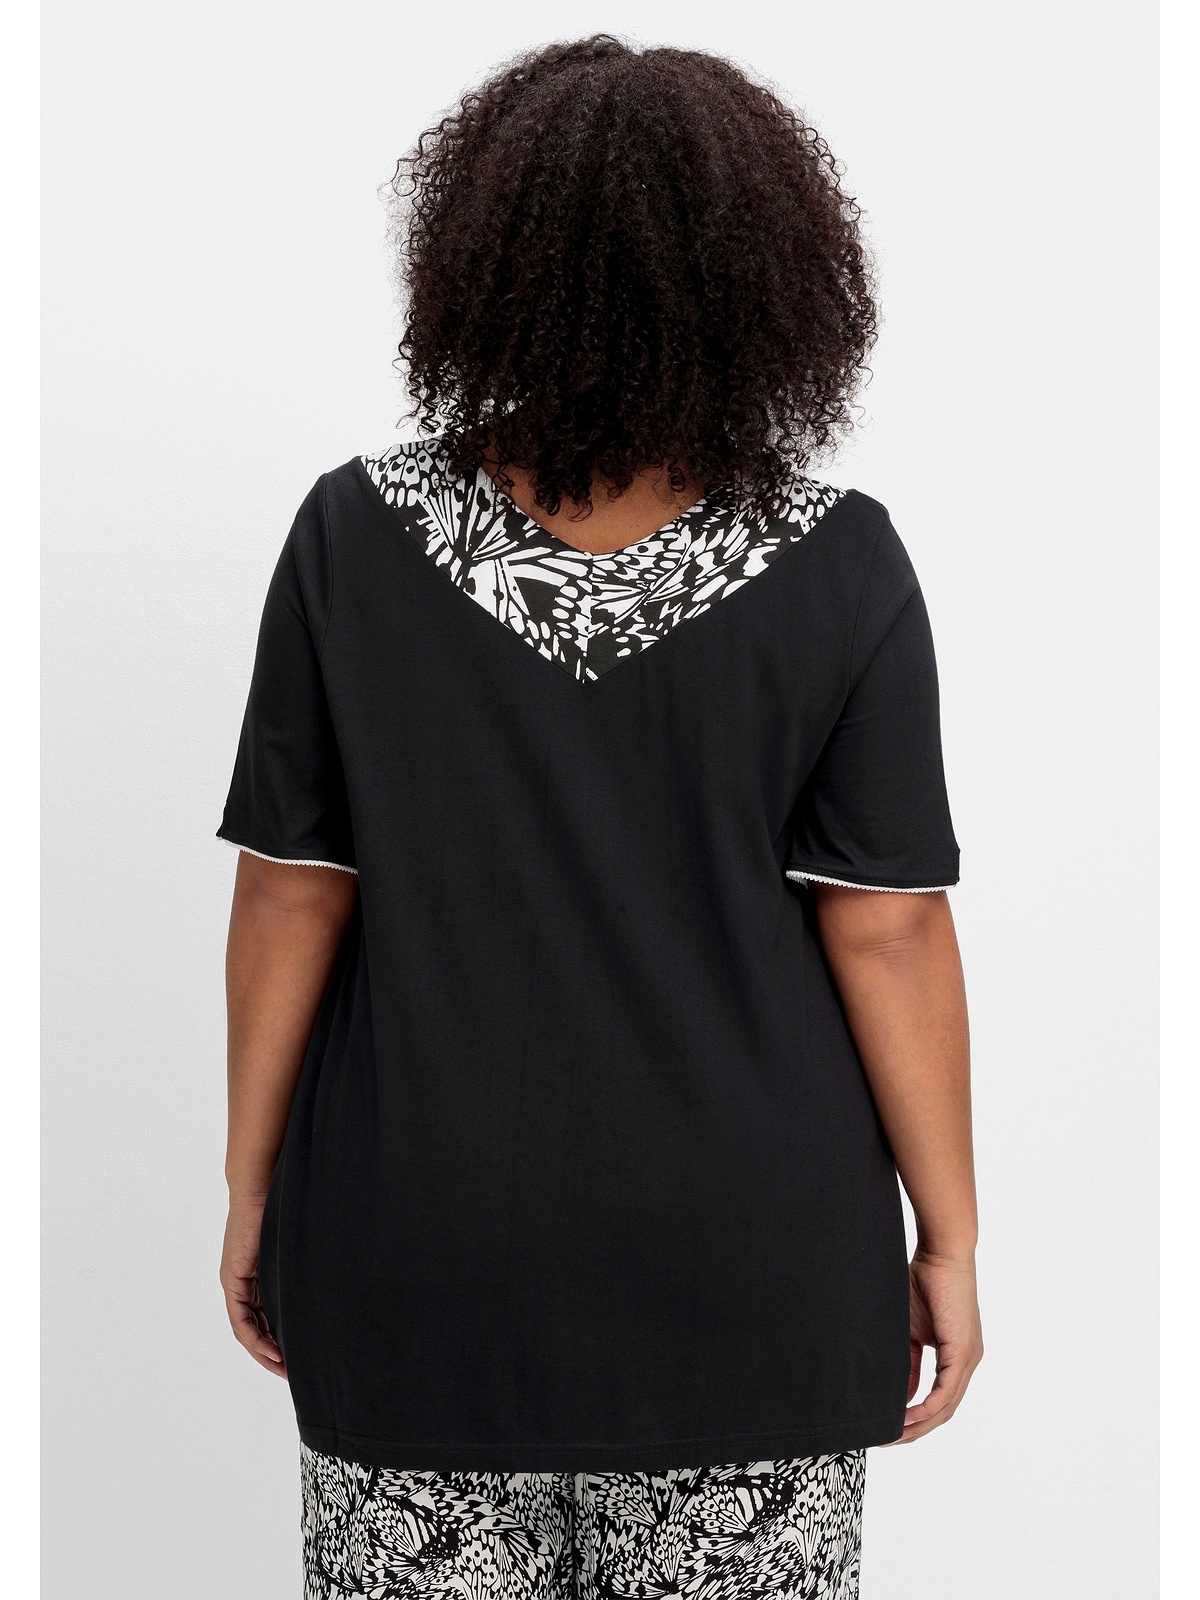 Blende am Longshirt mit V-Ausschnitt breiter »Große Größen«, Sheego kaufen